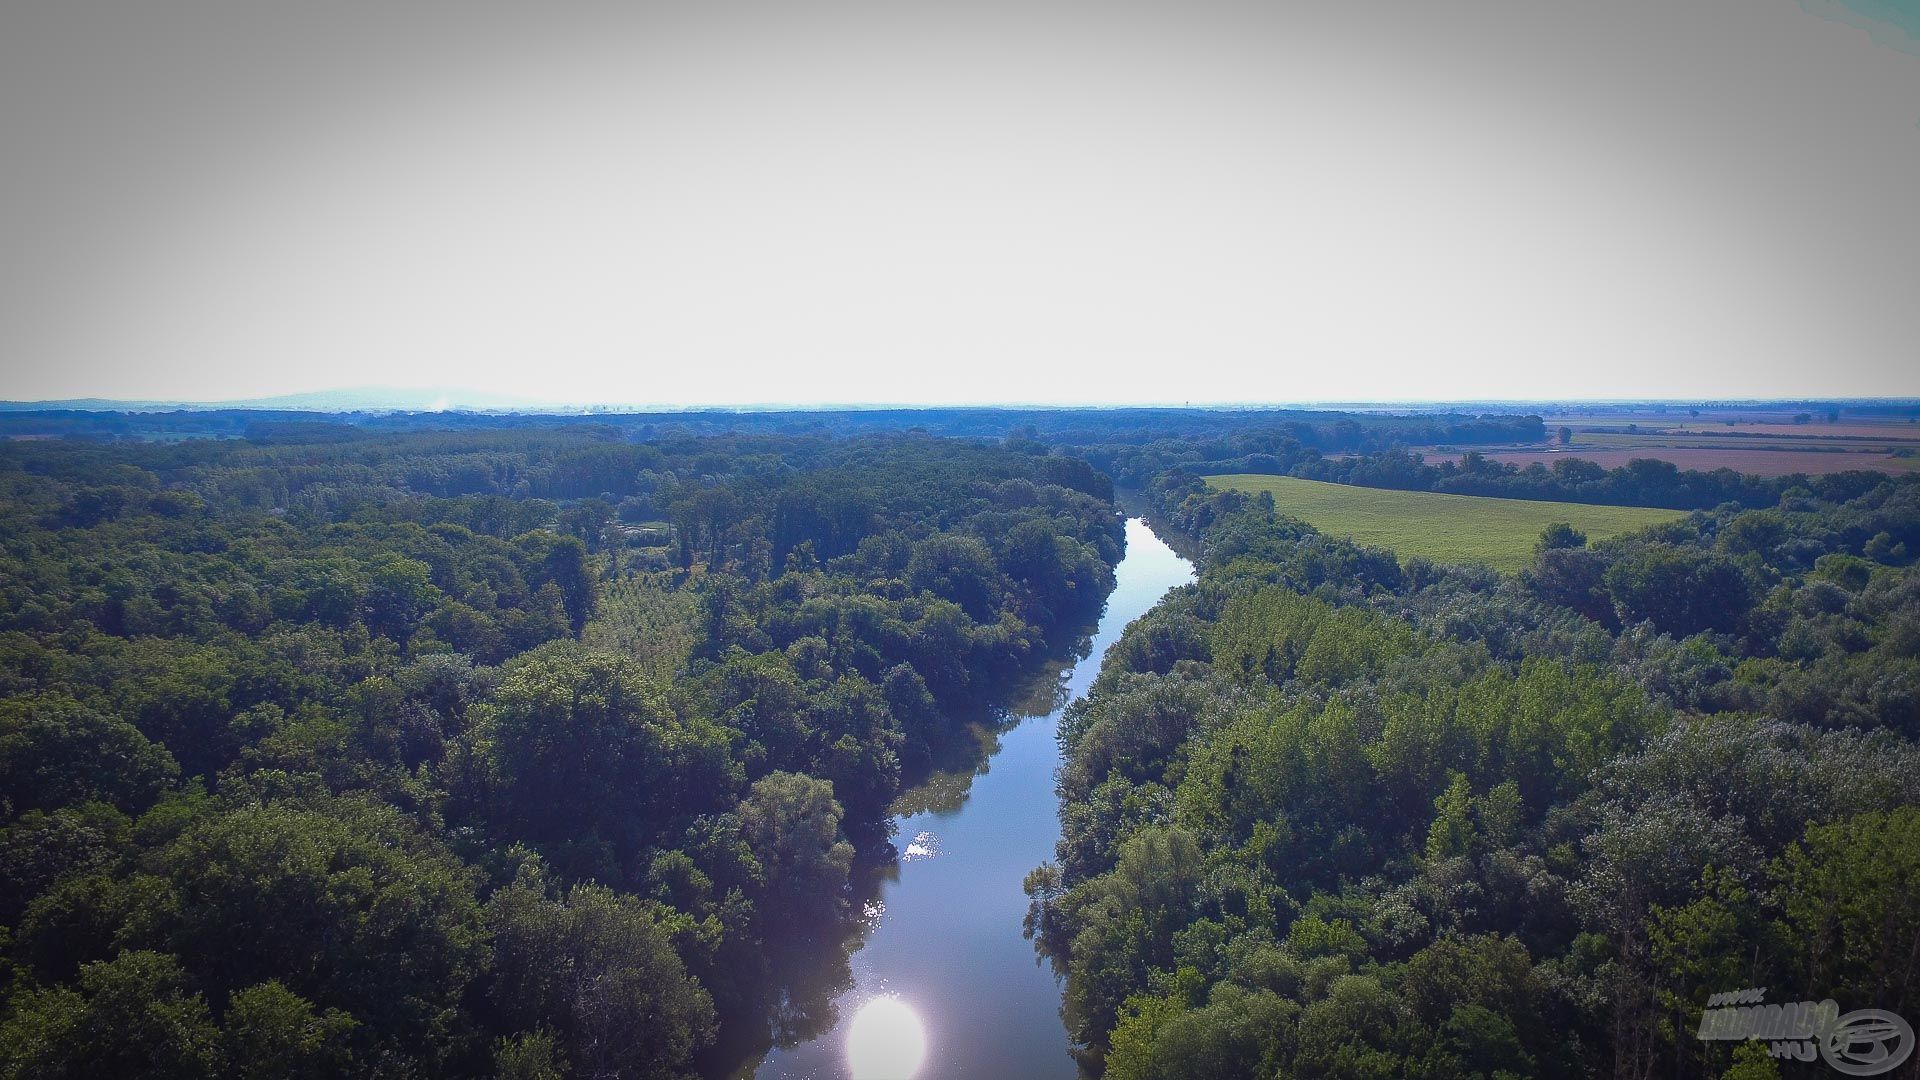 Az egyik kedvenc folyóm a Bodrog, ami a szememben egy rövid, keskeny, meghorgászható víz